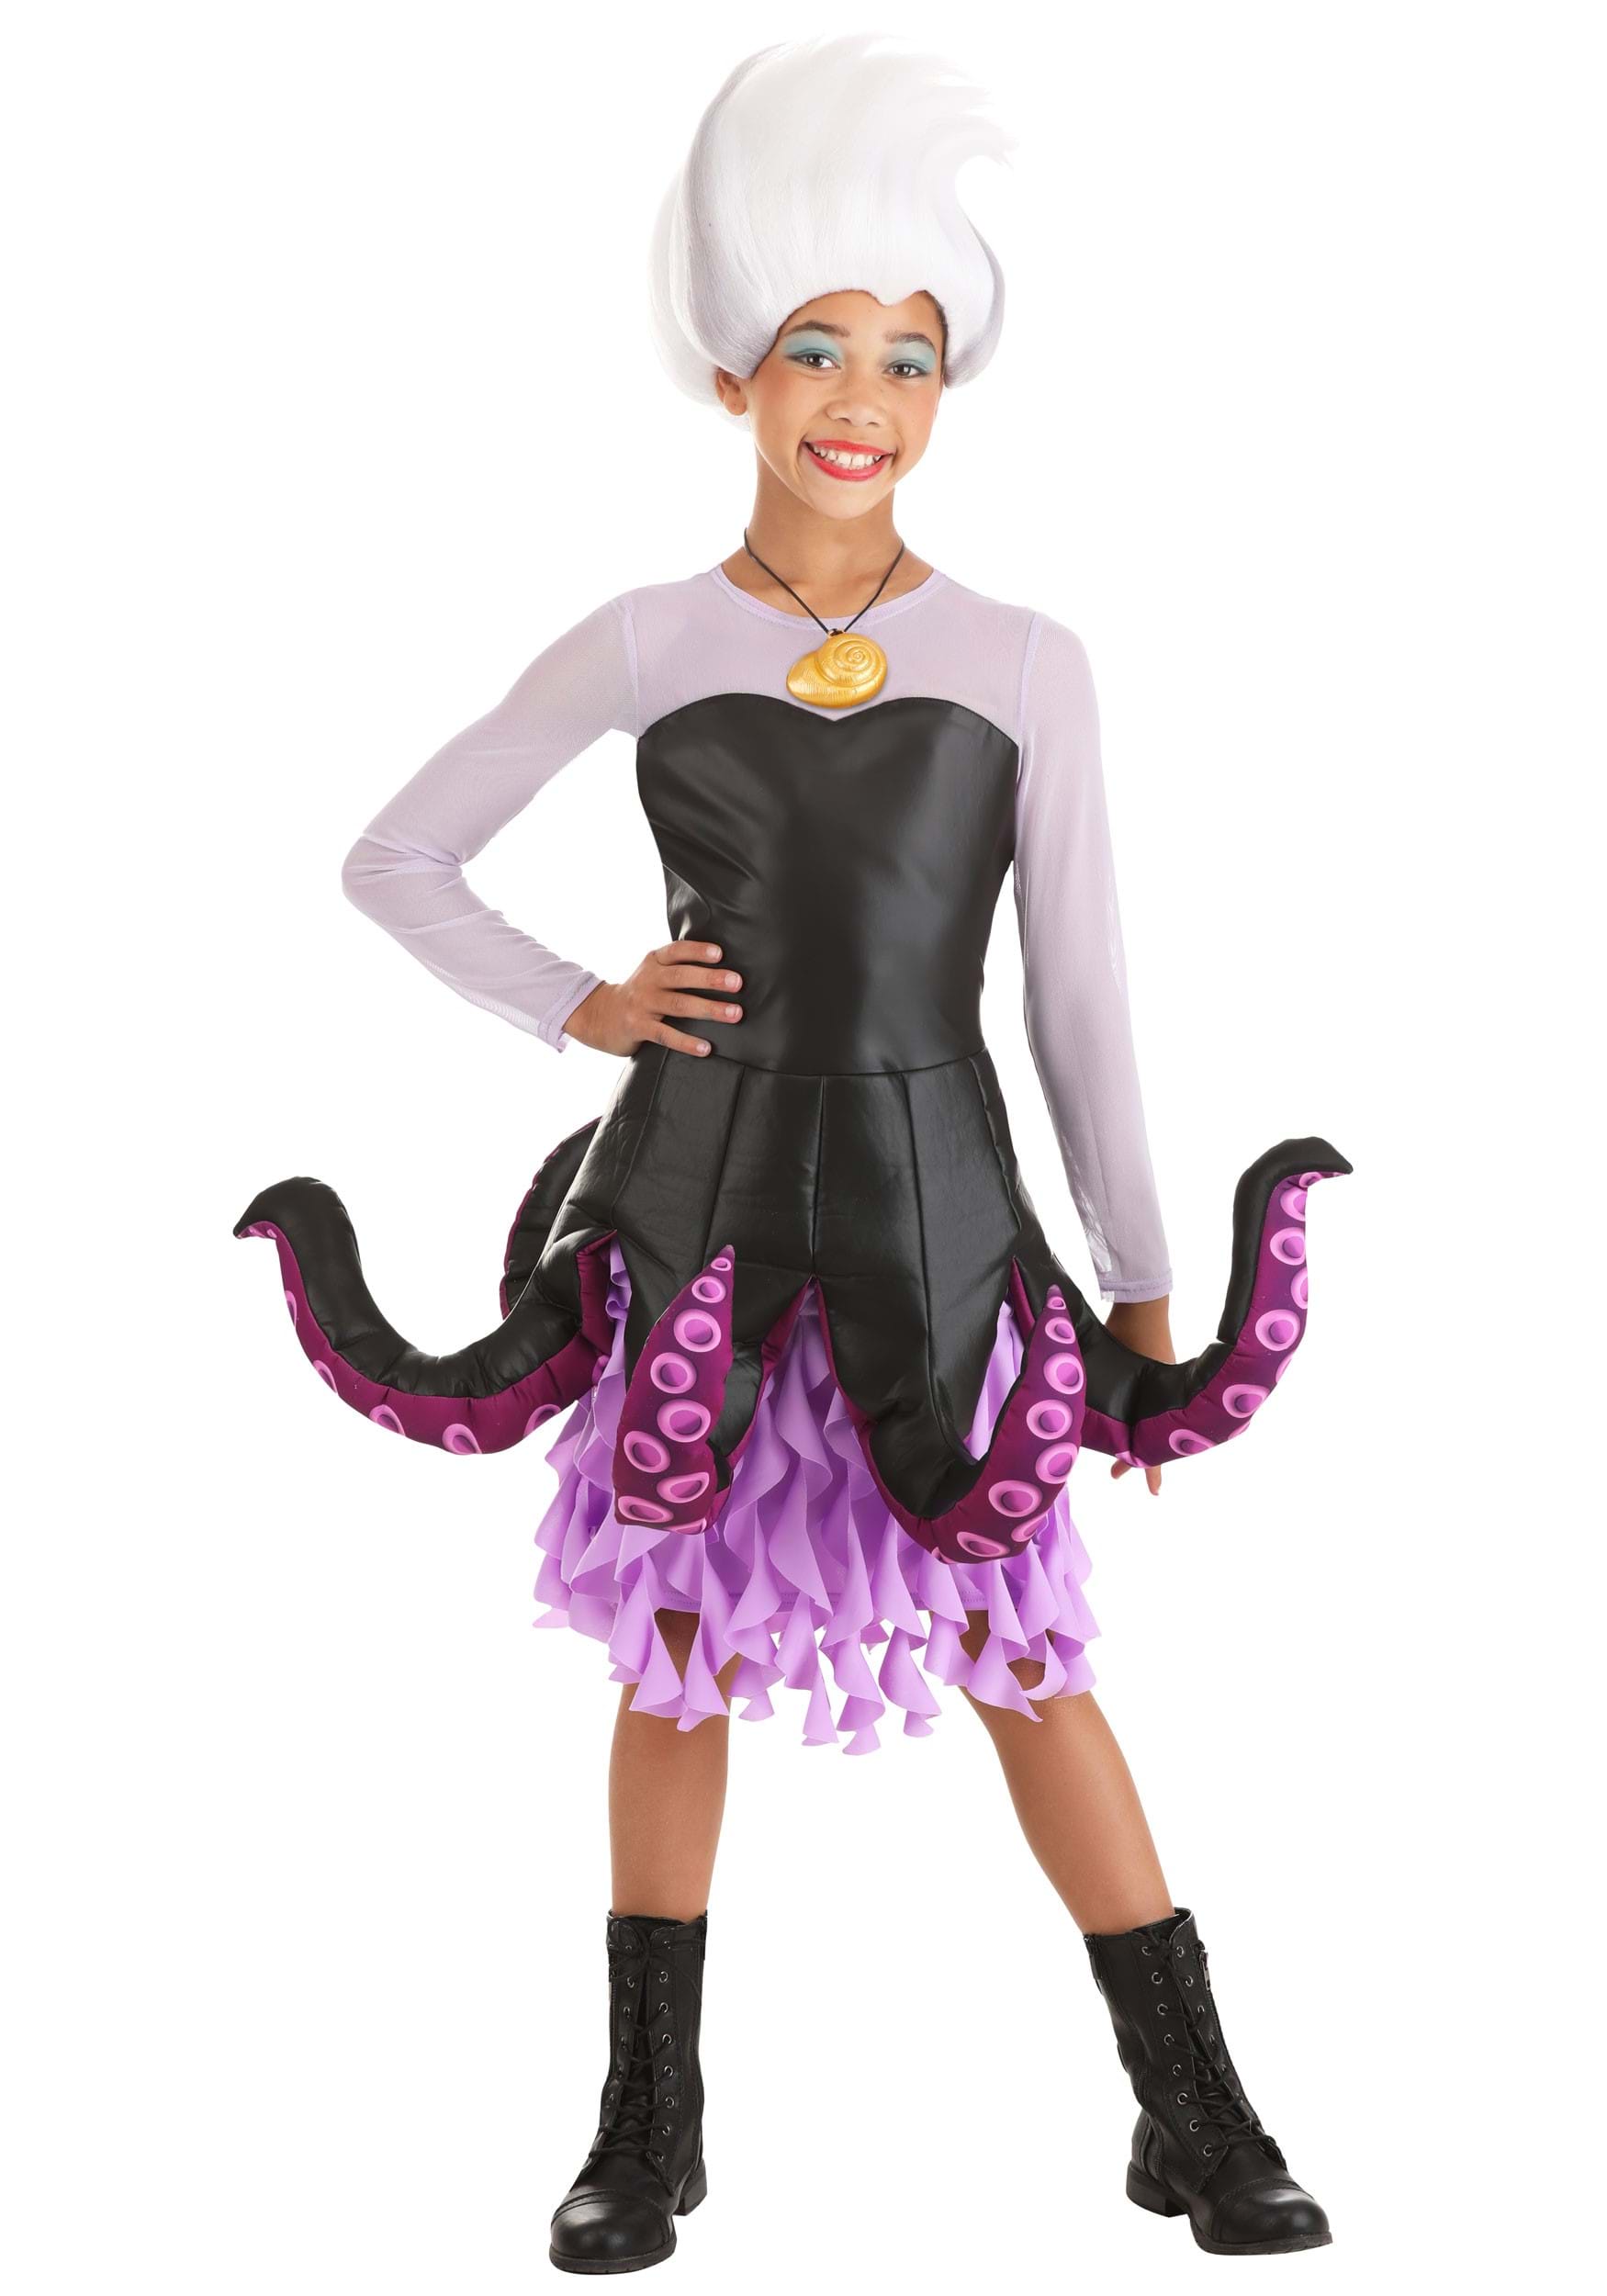 Photos - Fancy Dress Disney FUN Costumes Exclusive  Ursula Halloween Costume for Tween Girls As 